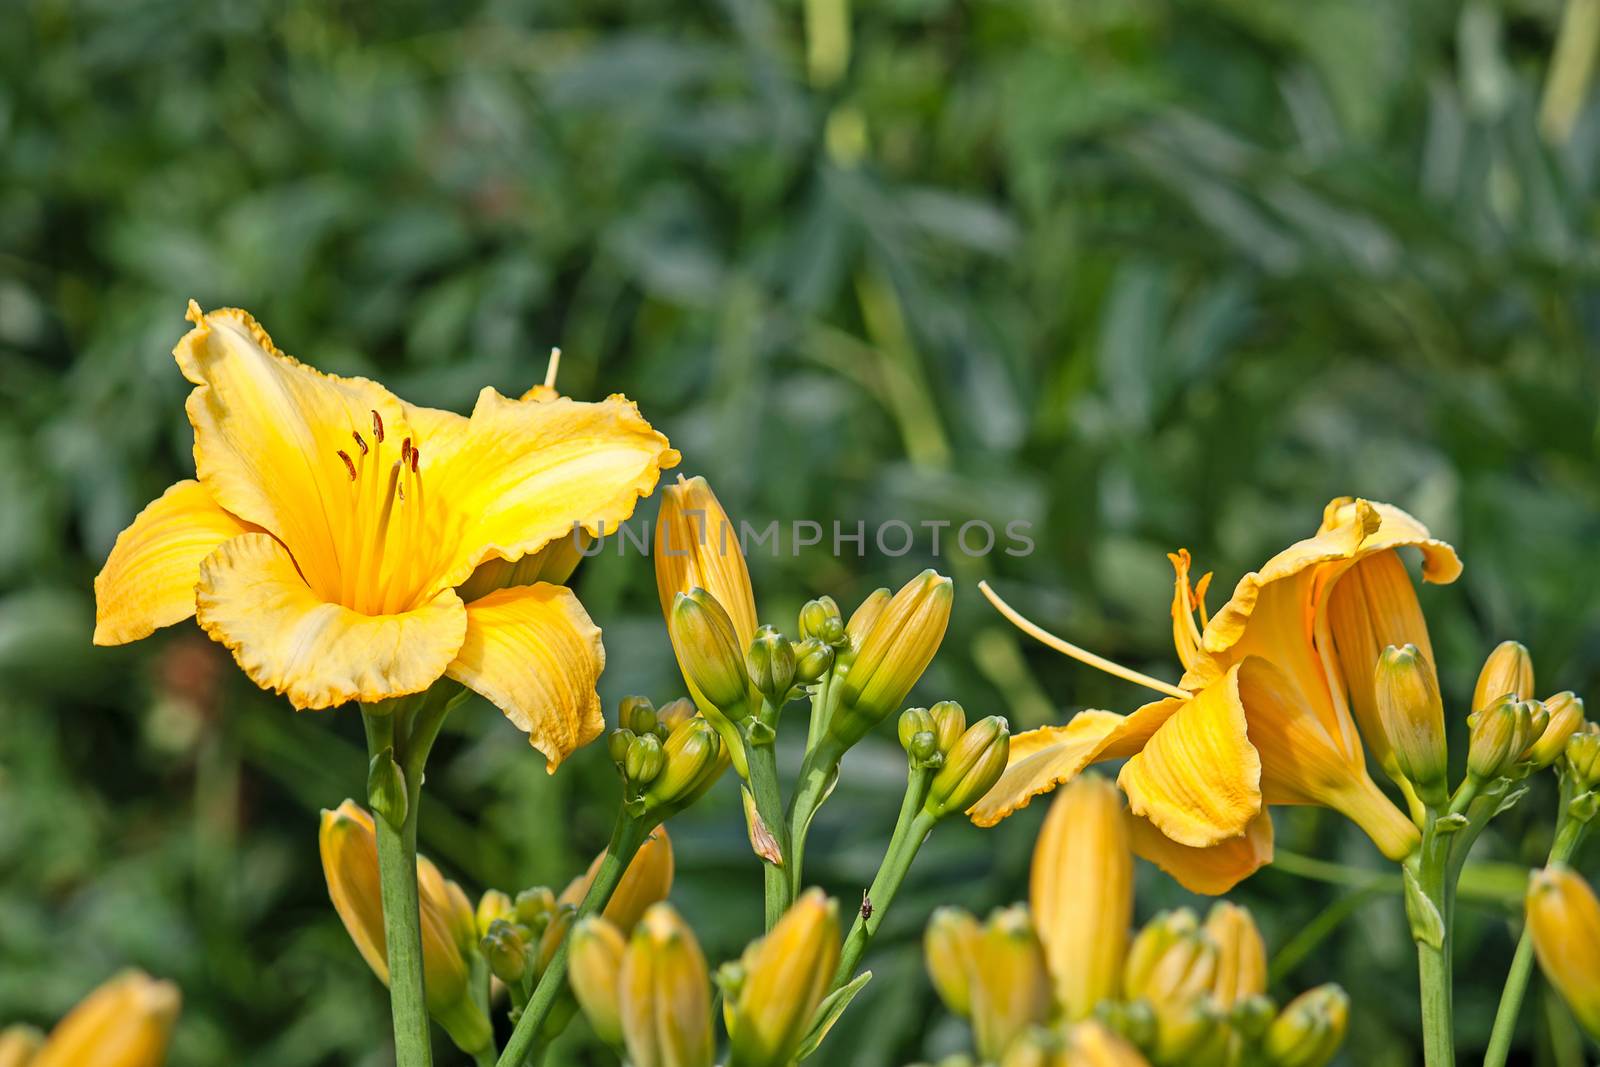 Yellow daylily flower close-up.